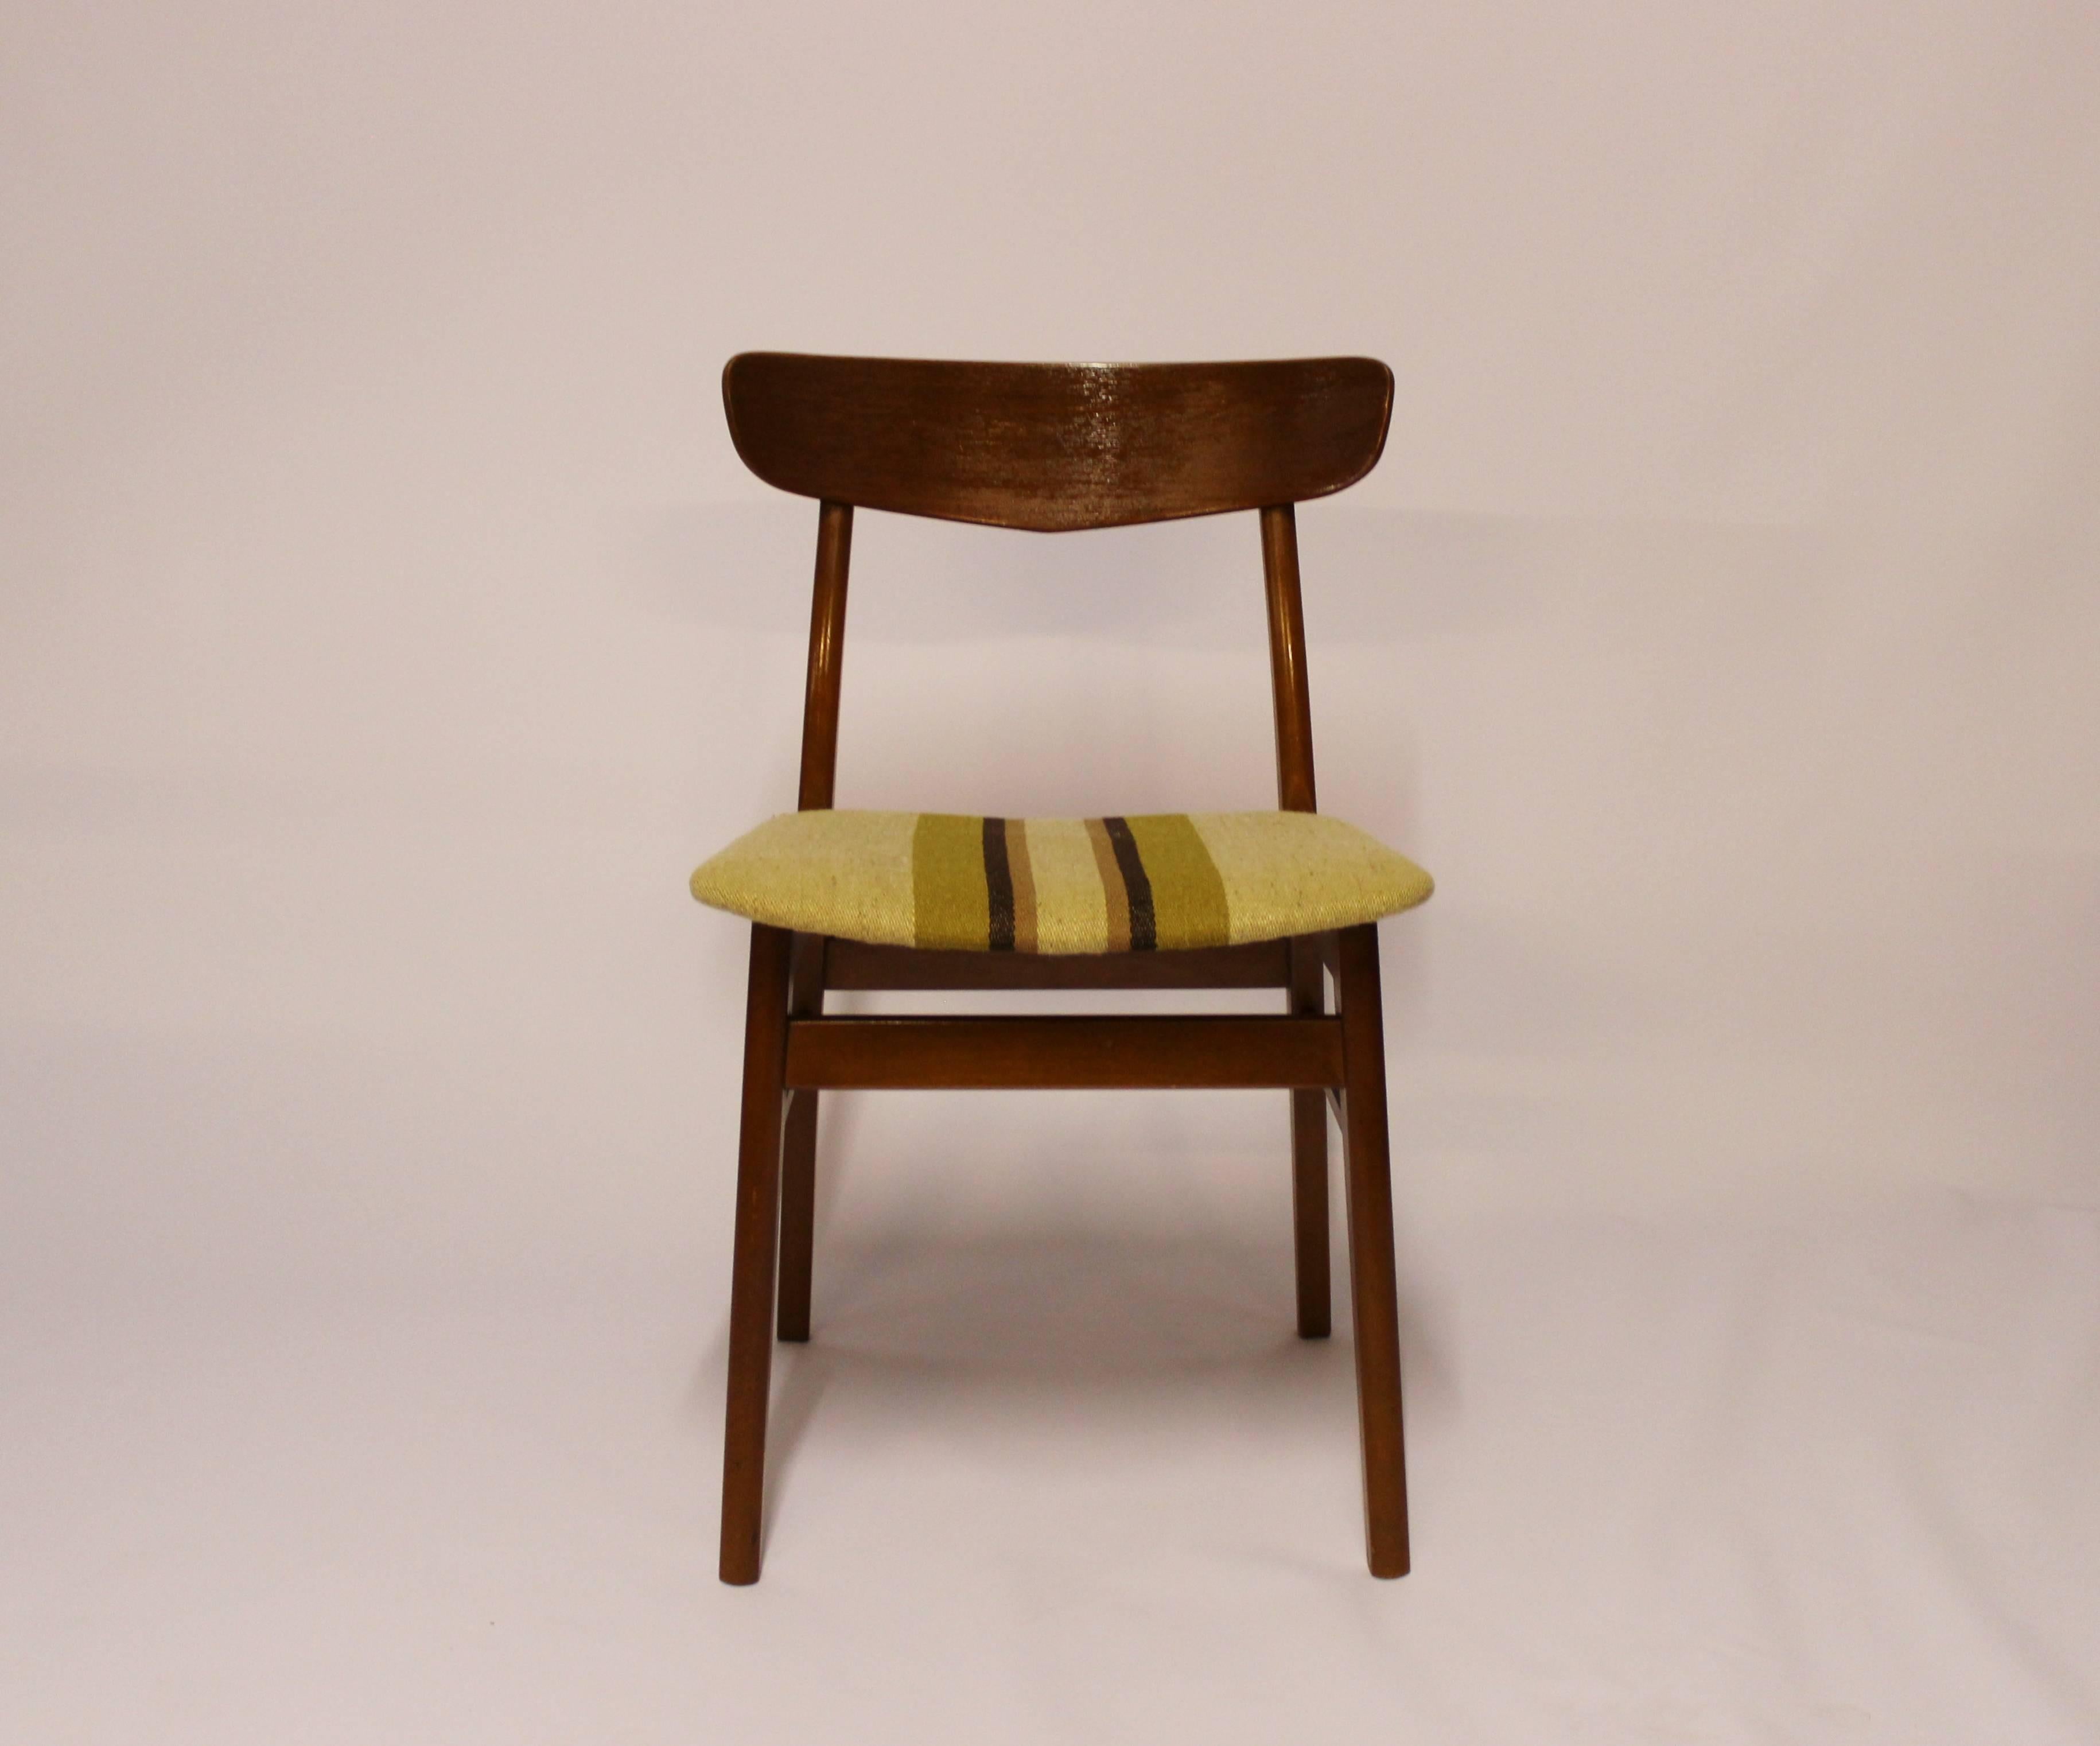 Satz von sechs Esszimmerstühlen aus Teakholz, gepolstert mit grün gestreifter Wolle, dänisches Design aus den 1960er Jahren. Die Stühle sind in hervorragendem Vintage-Zustand.

*Wird nur zusammen als 6er-Set verkauft.

Dieses Produkt wird in unserer